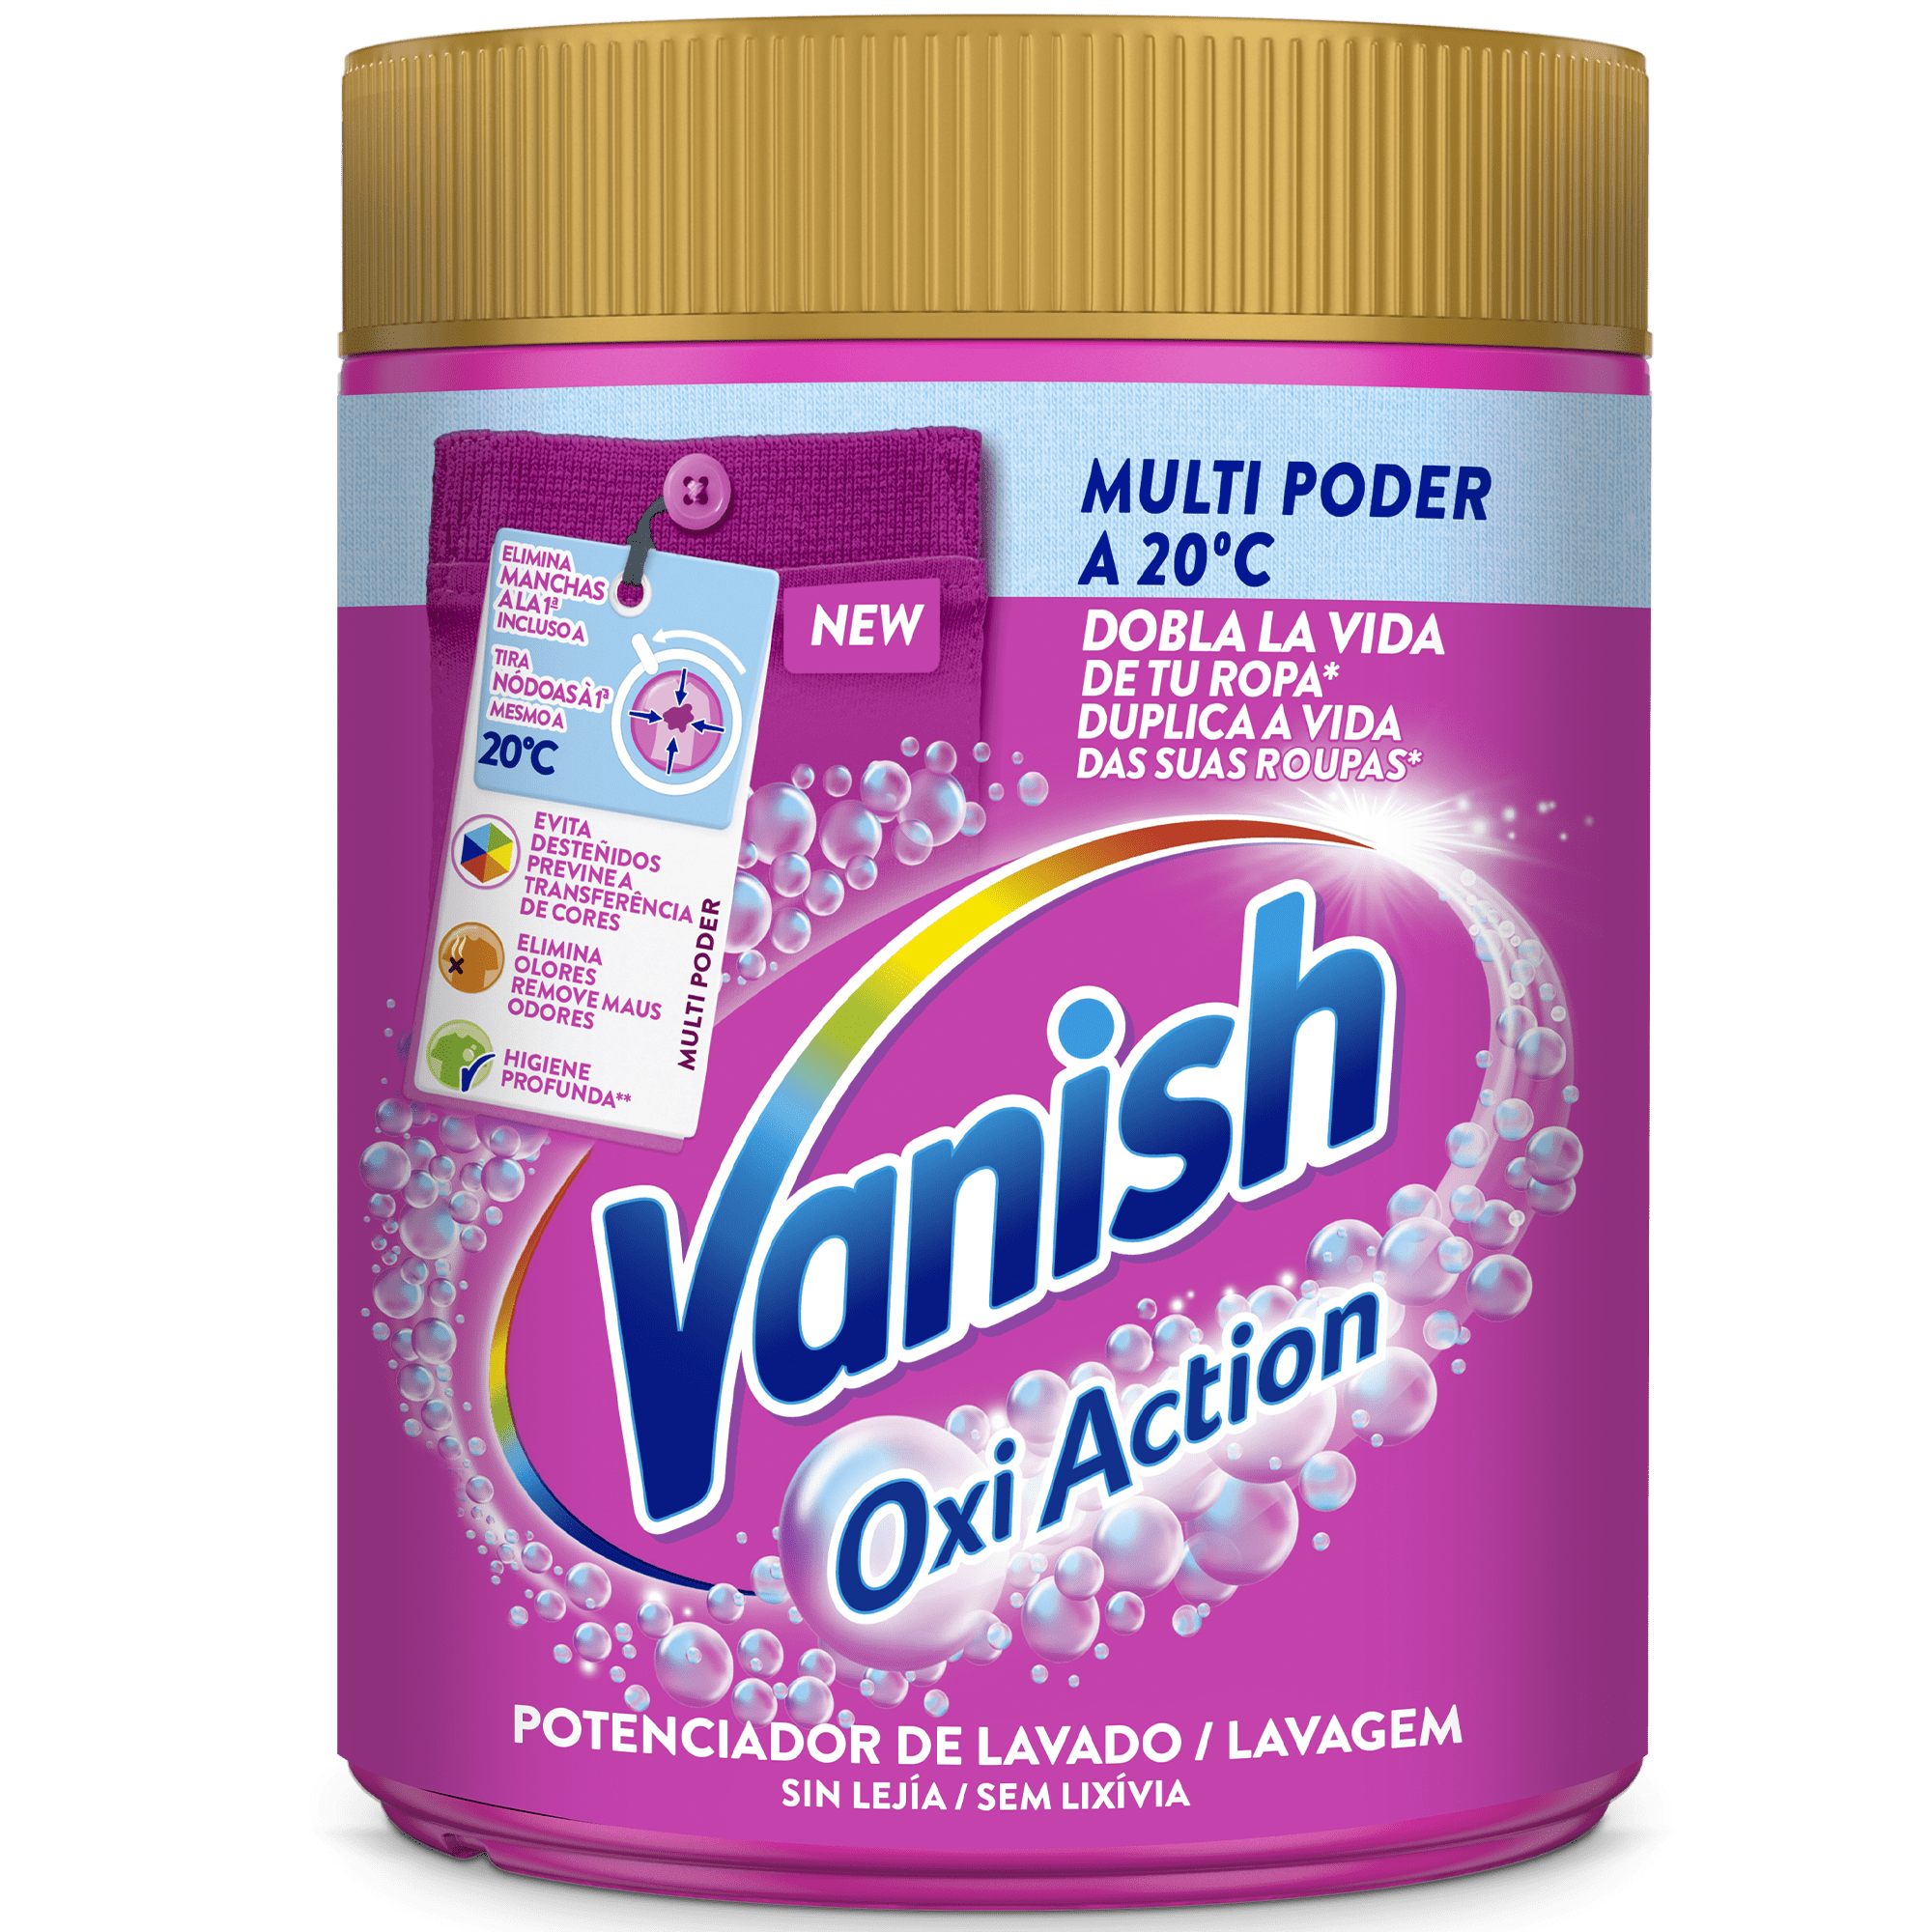 Vanish Oxi Action Multi Poder potenciador de lavado y quitamanchas en polvo